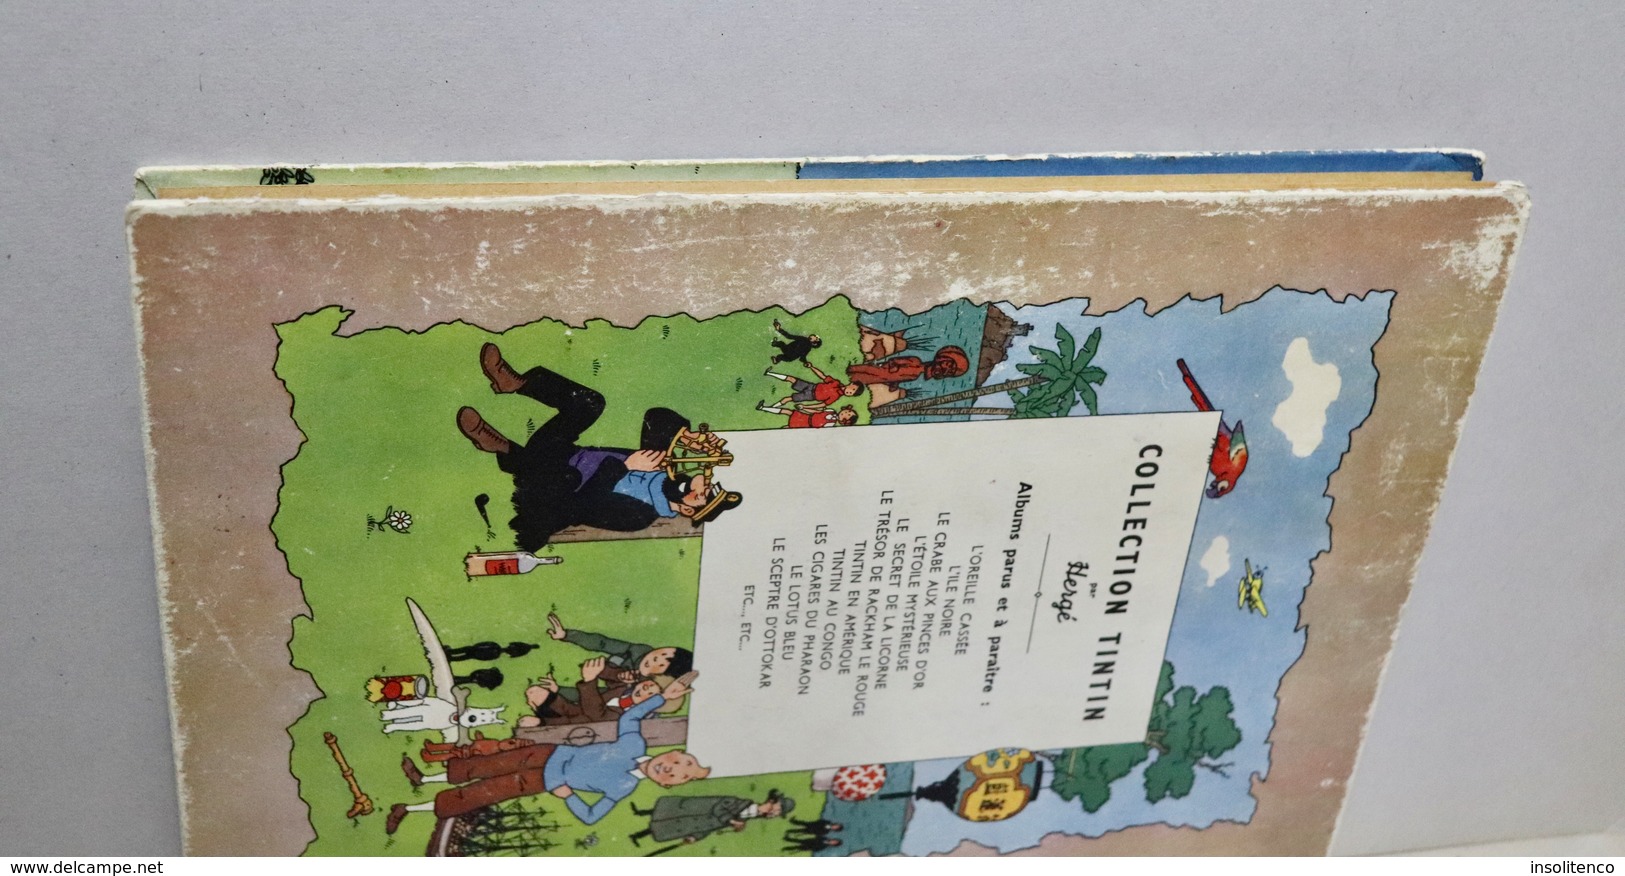 Tintin au Congo - Casterman - Dos jaune - B1 - 1946 - Titre en blanc  - 1ère édition originale couleur  - Bon état